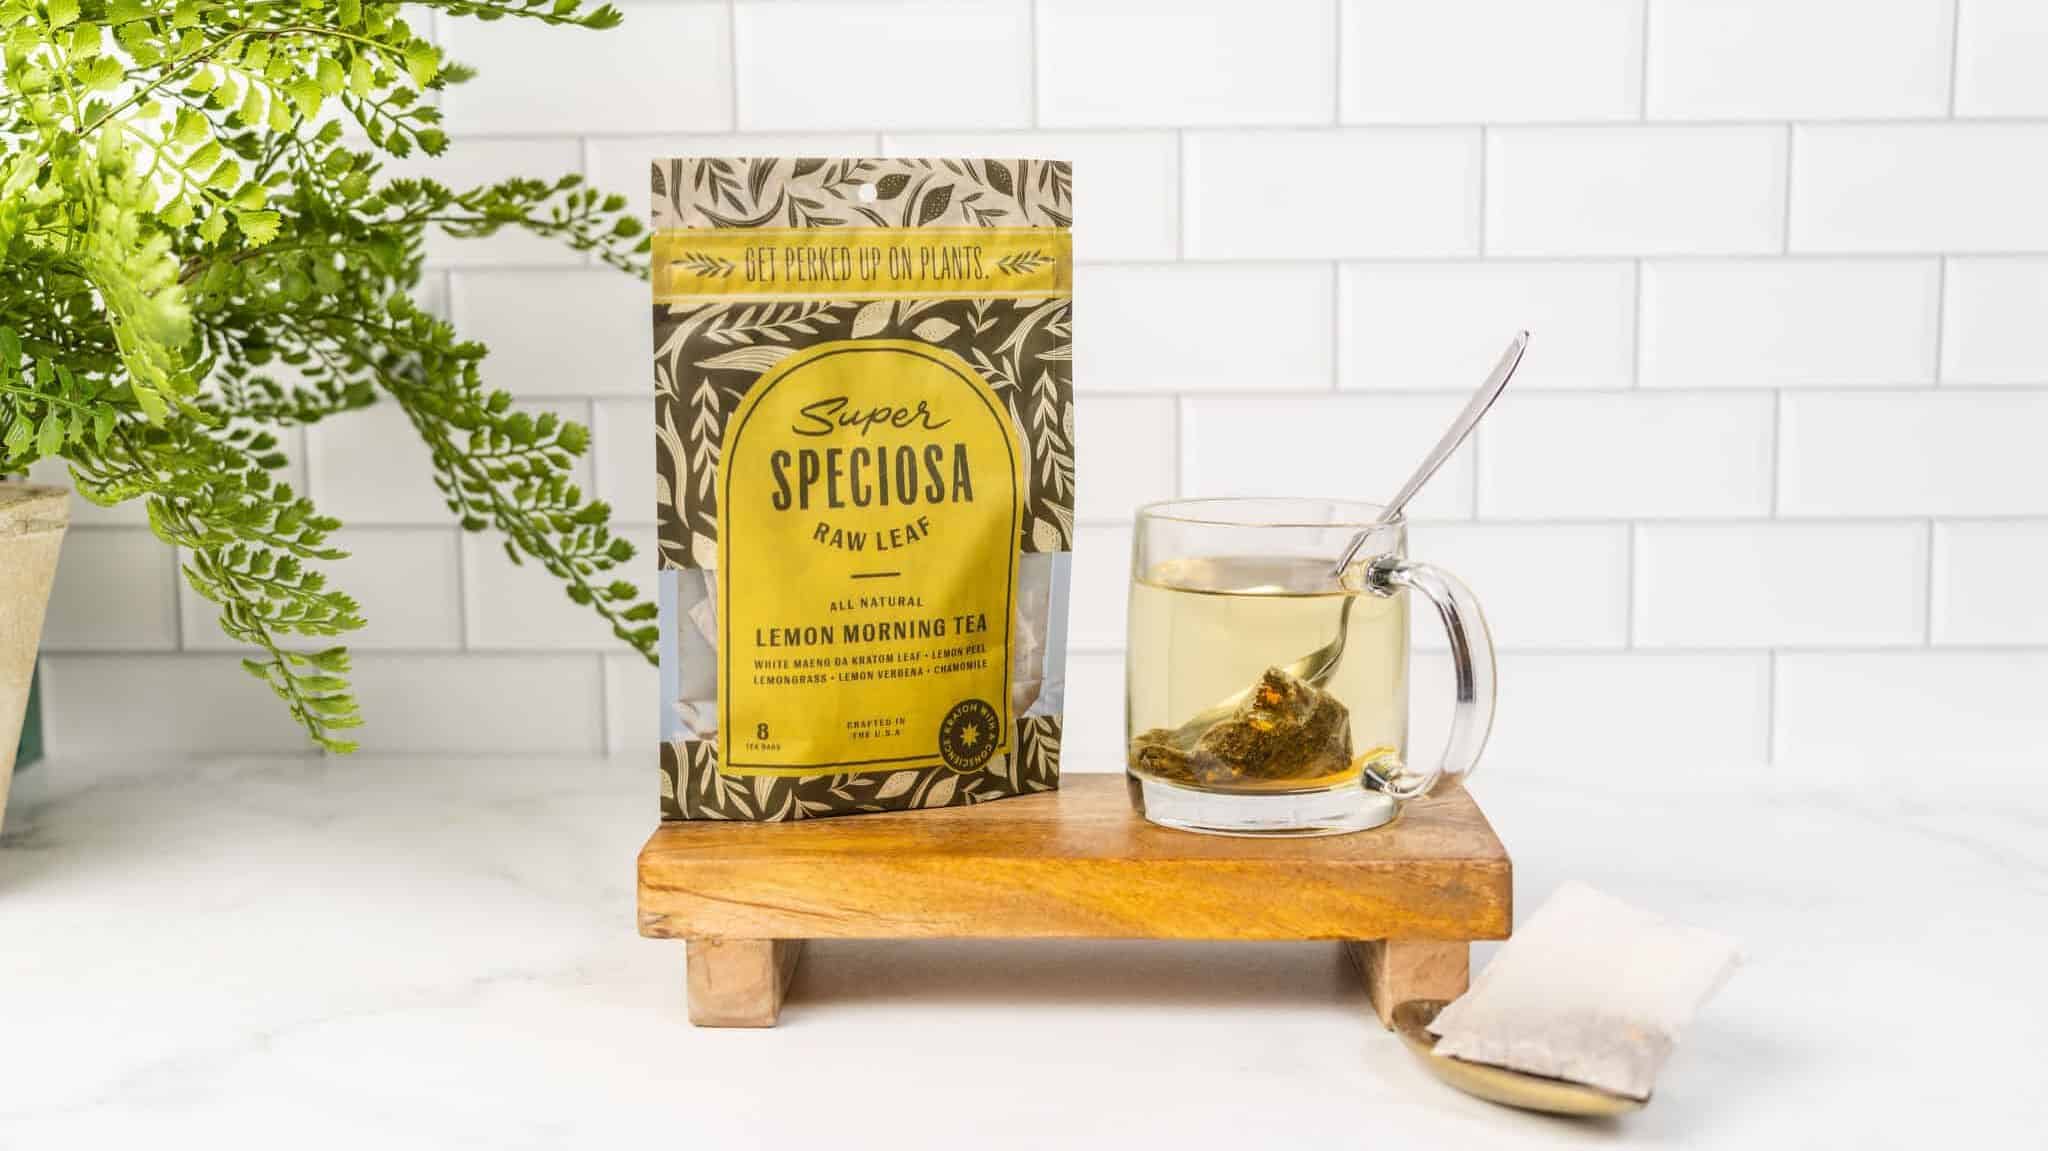 Super Speciosa lemon morning kratom tea bags for energy. Choose the right kratom tea for you!